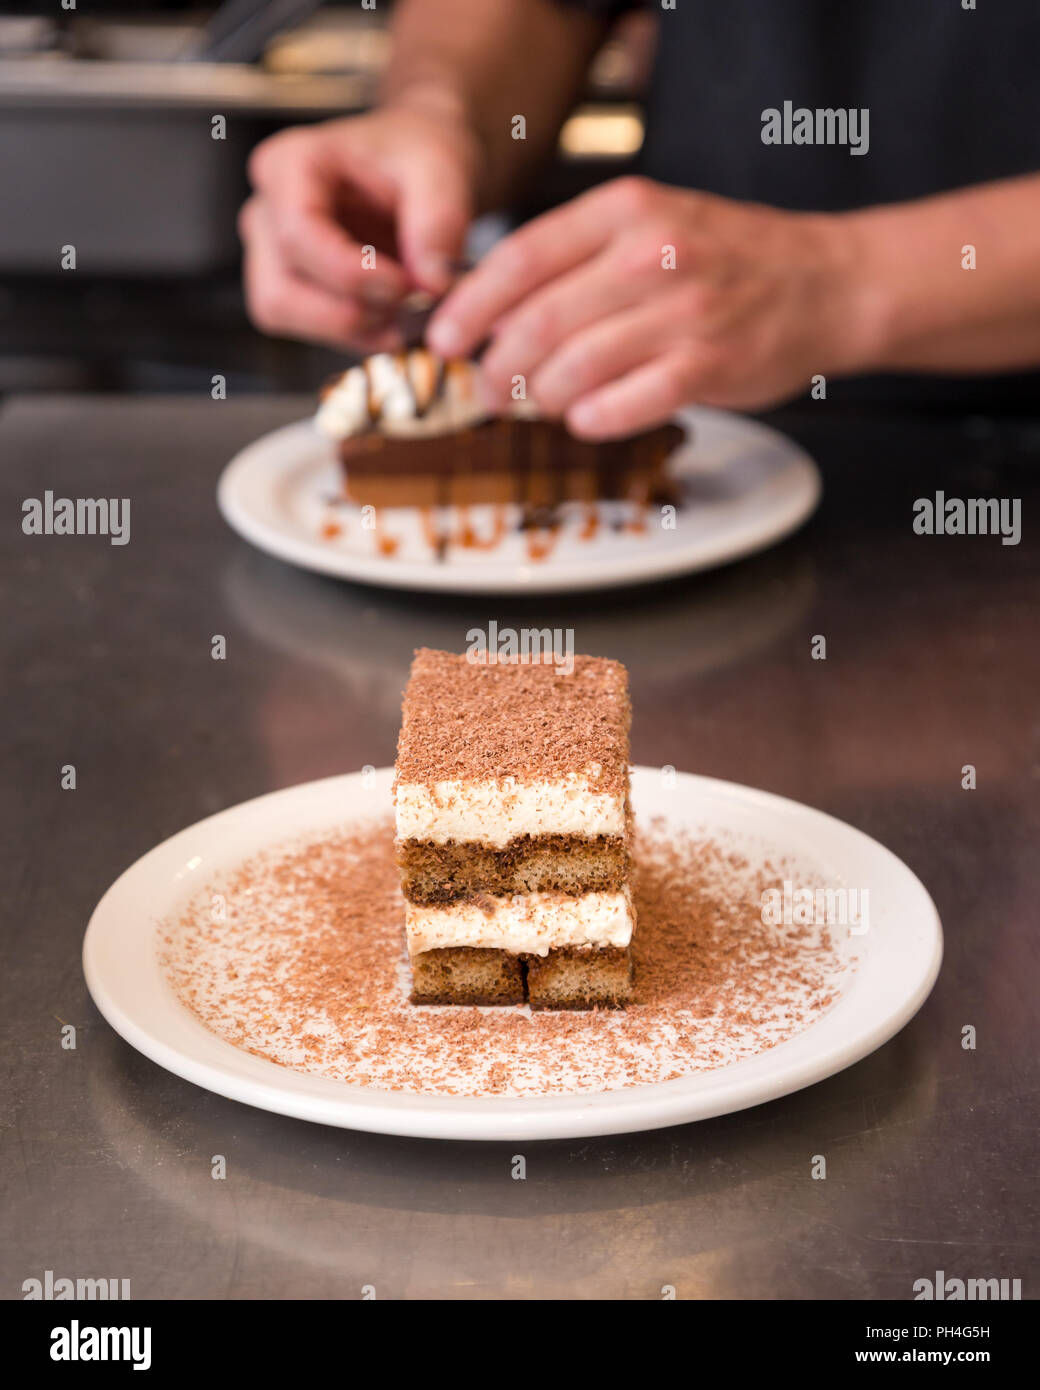 Il tiramisù spolverato di cioccolato con una torta al cioccolato in background. Foto Stock